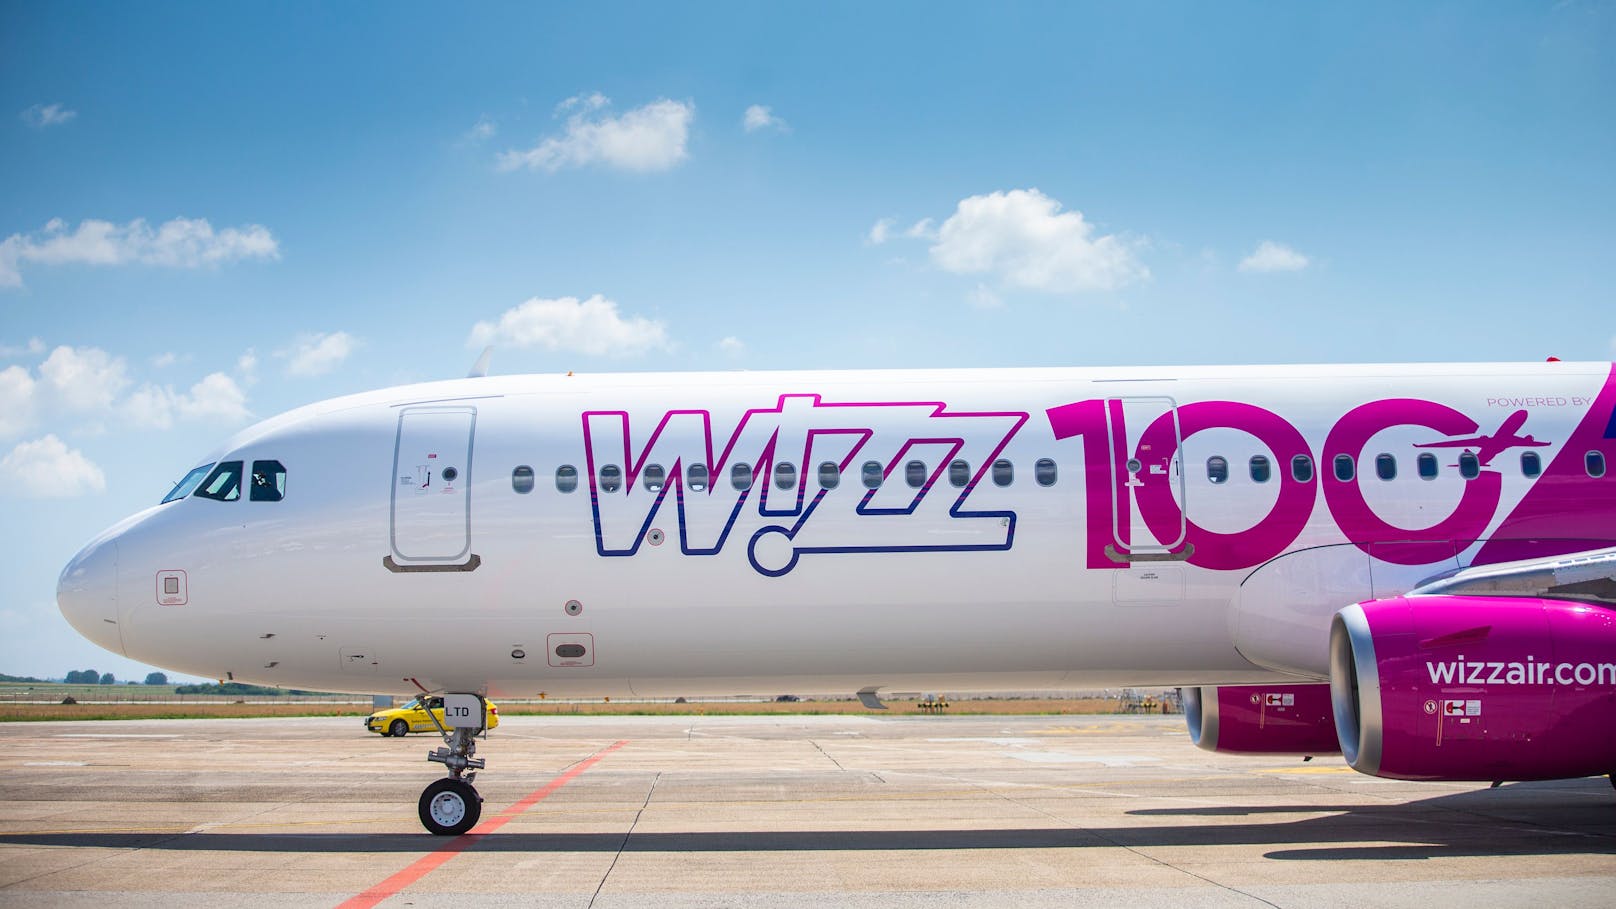 Die ungarische Fluglinie Wizz Air kehrt nach Salzburg zurück und wird vorerst drei Strecken nonstop ab Salzburg ins Streckennetz aufnehmen.